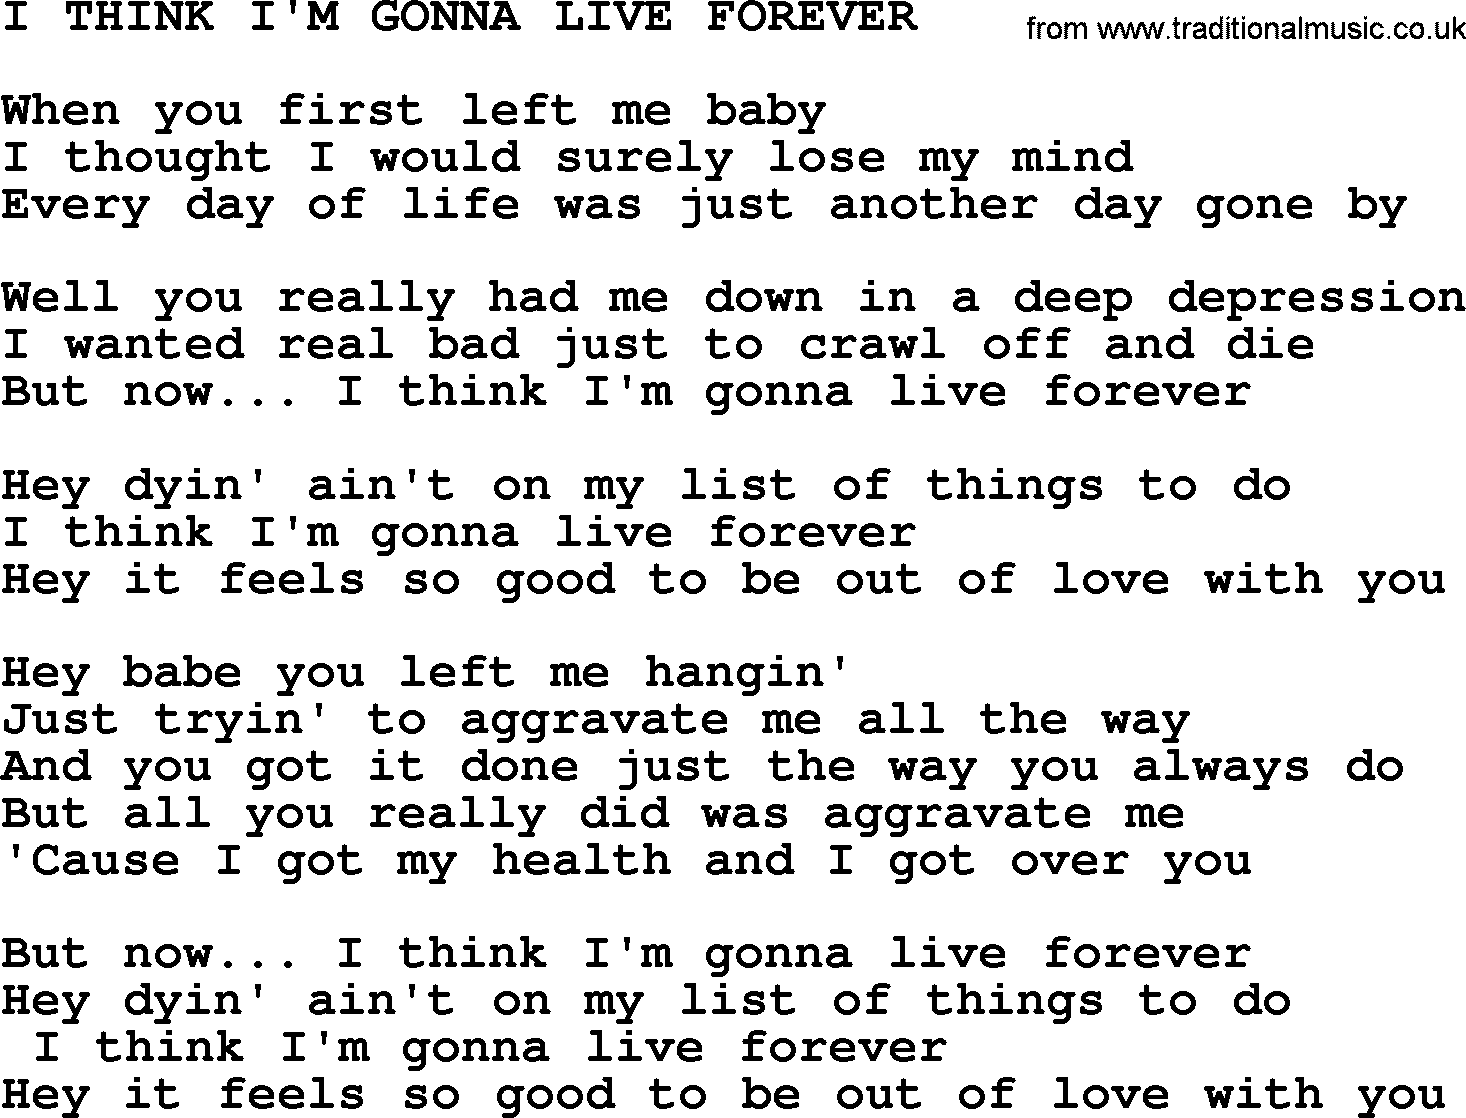 Merle Haggard song: I Think I'm Gonna Live Forever, lyrics.